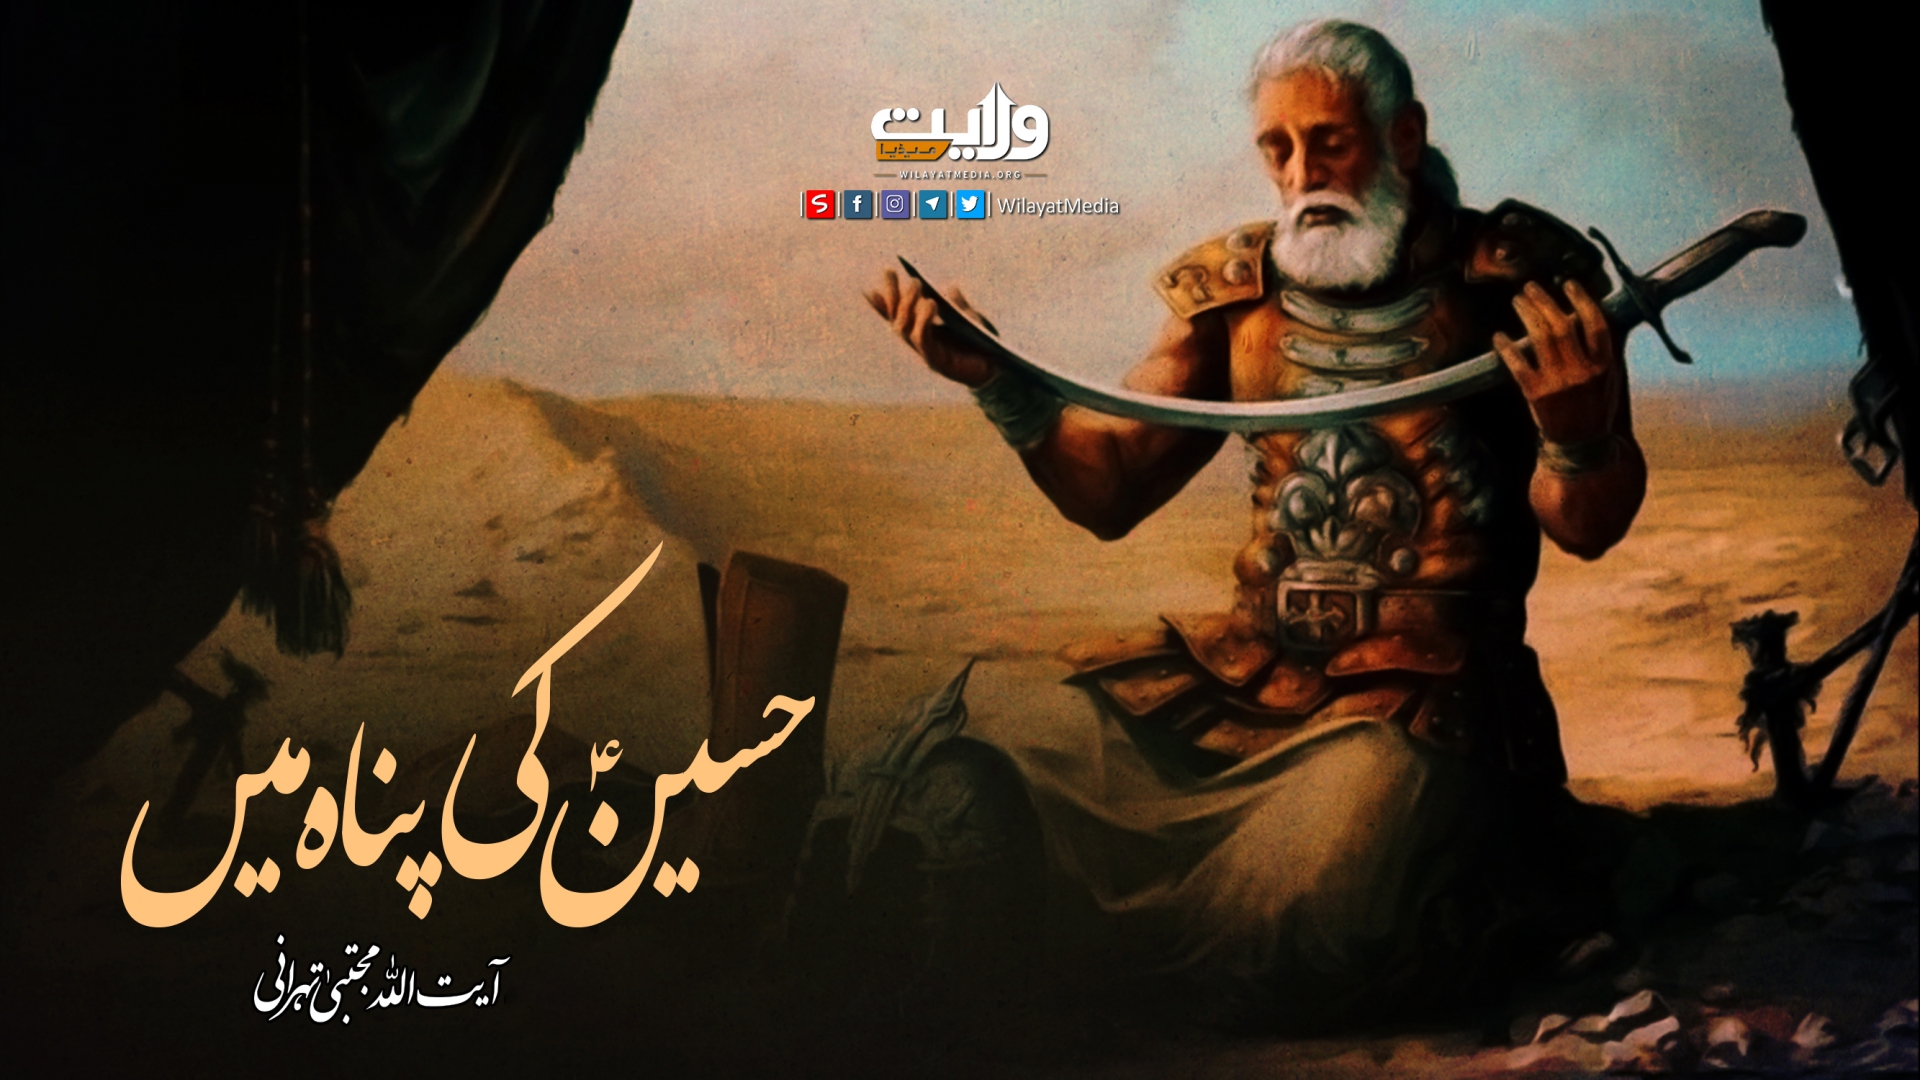 حسینؑ کی پناہ میں | آیت اللہ آقا مجتبیٰ تہرانی | Farsi Sub Urdu